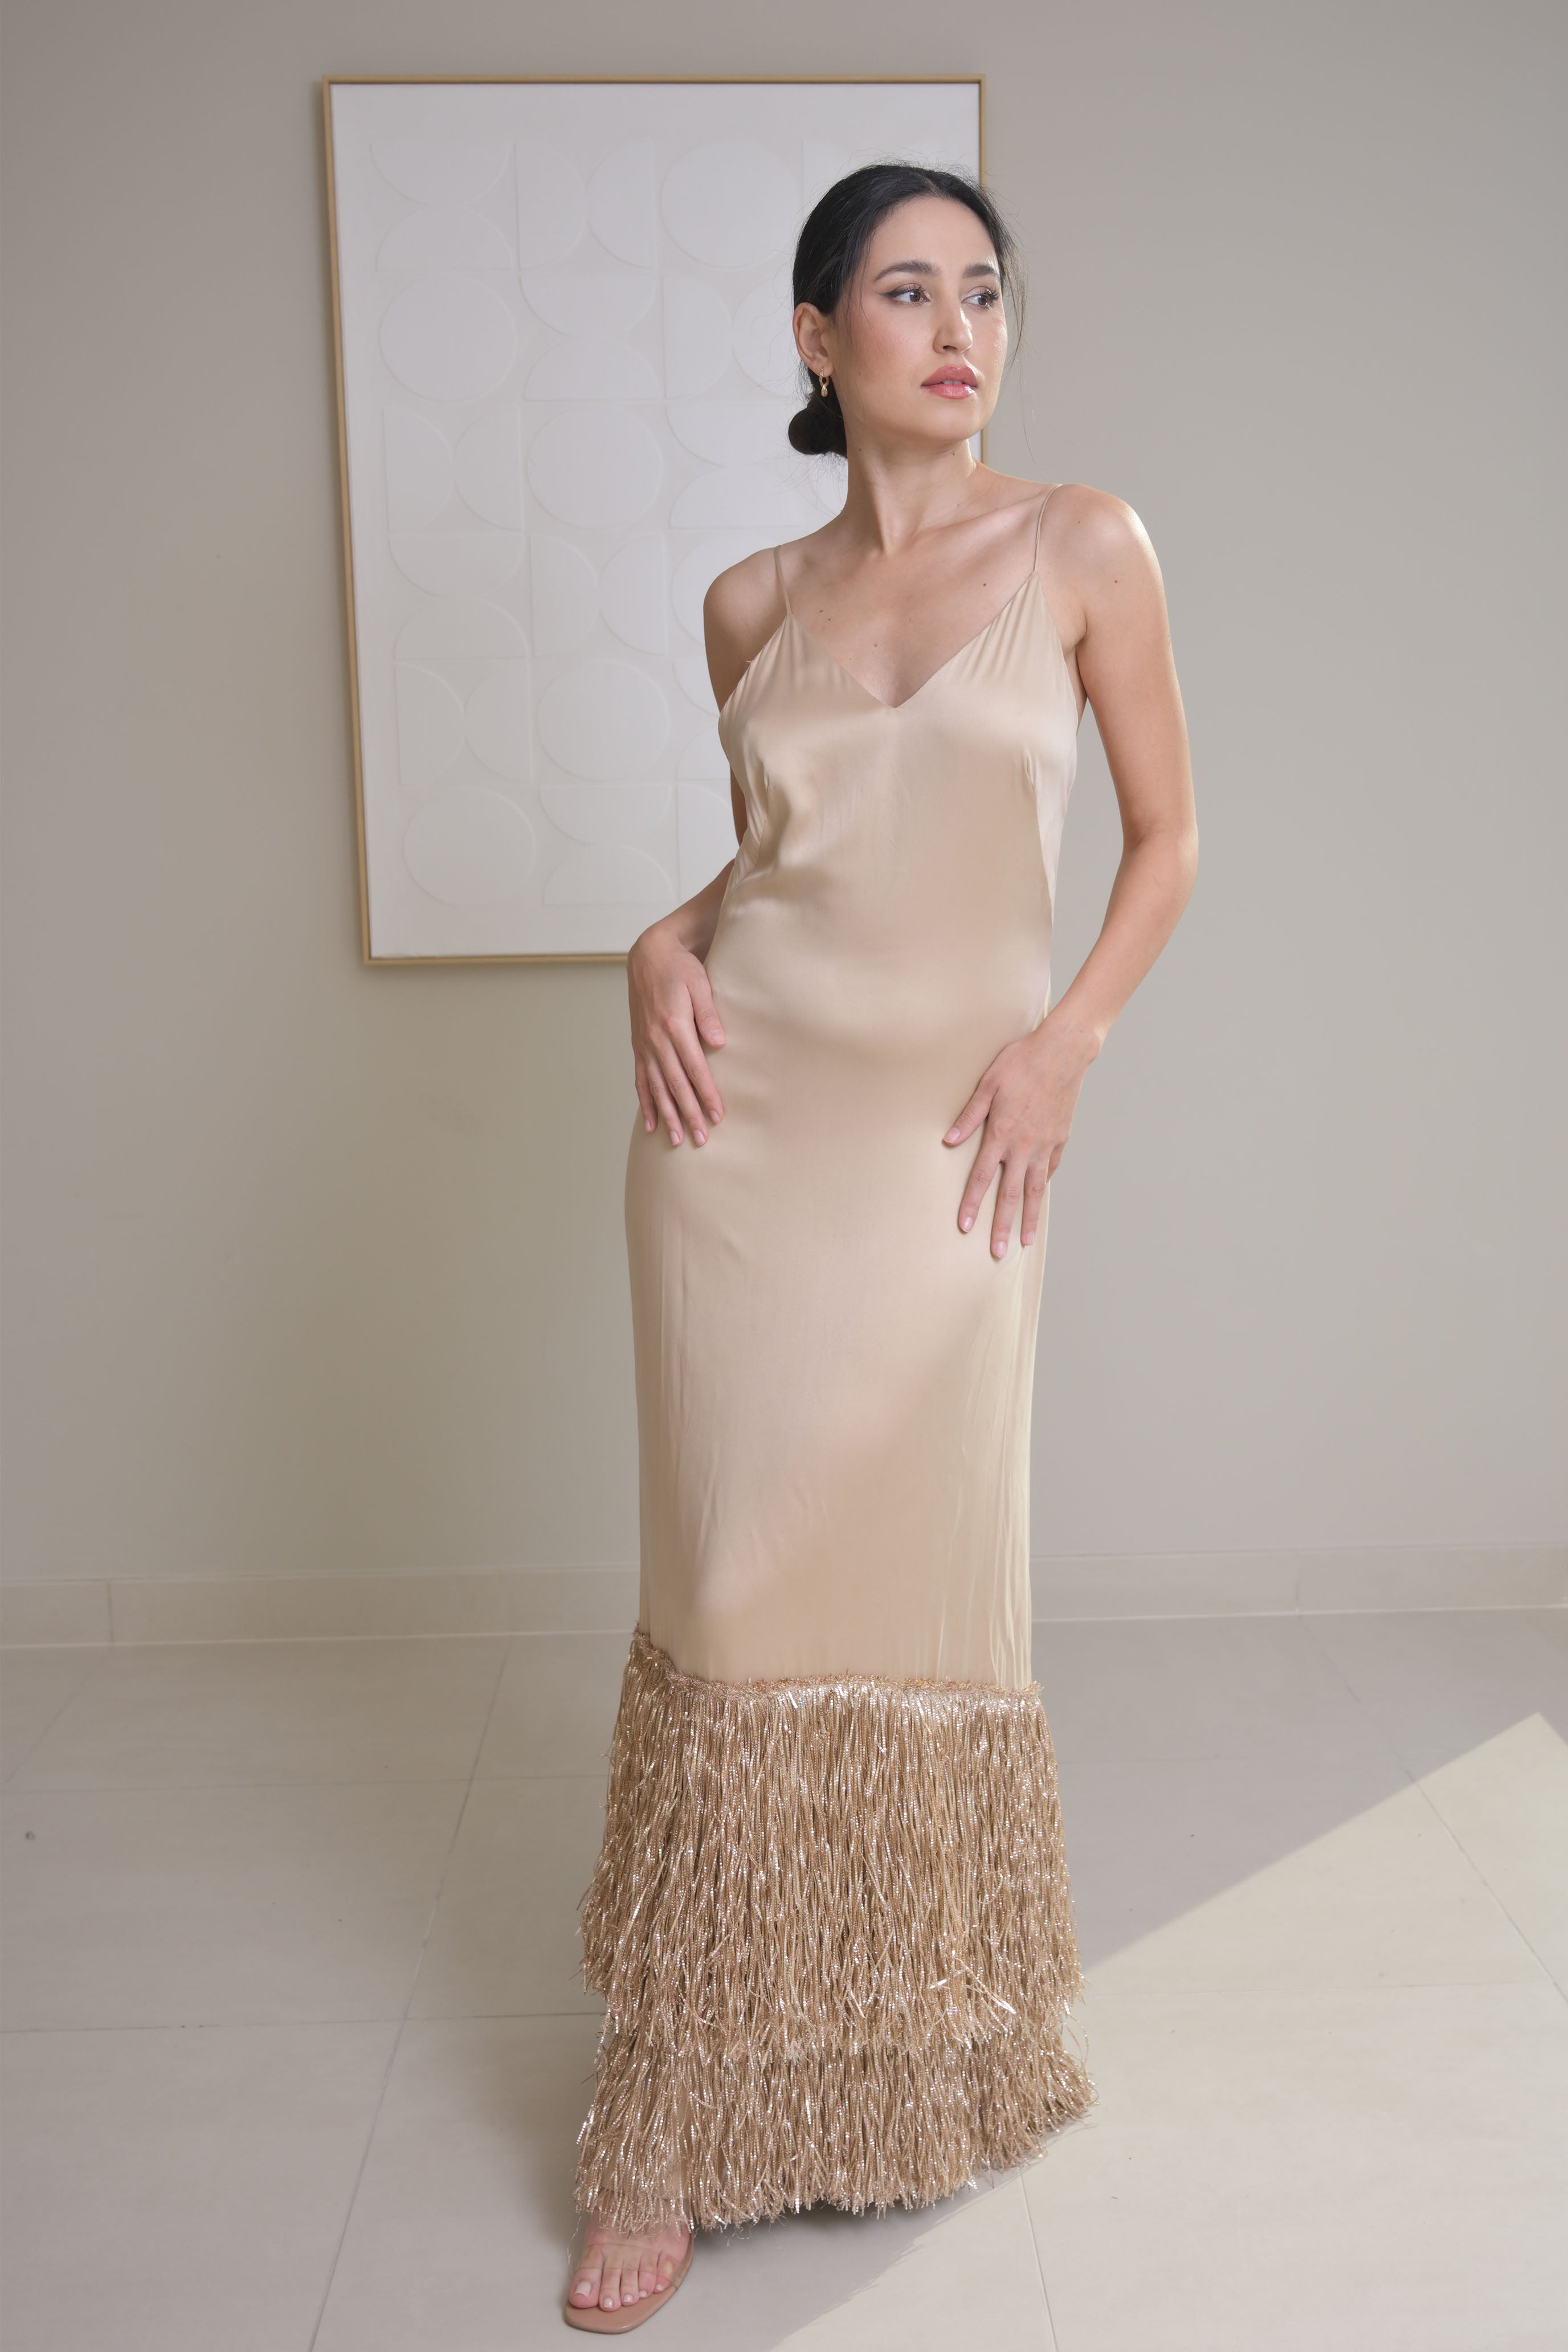 Golden Elegant embelished backless dress - SANDRA MANSOUR